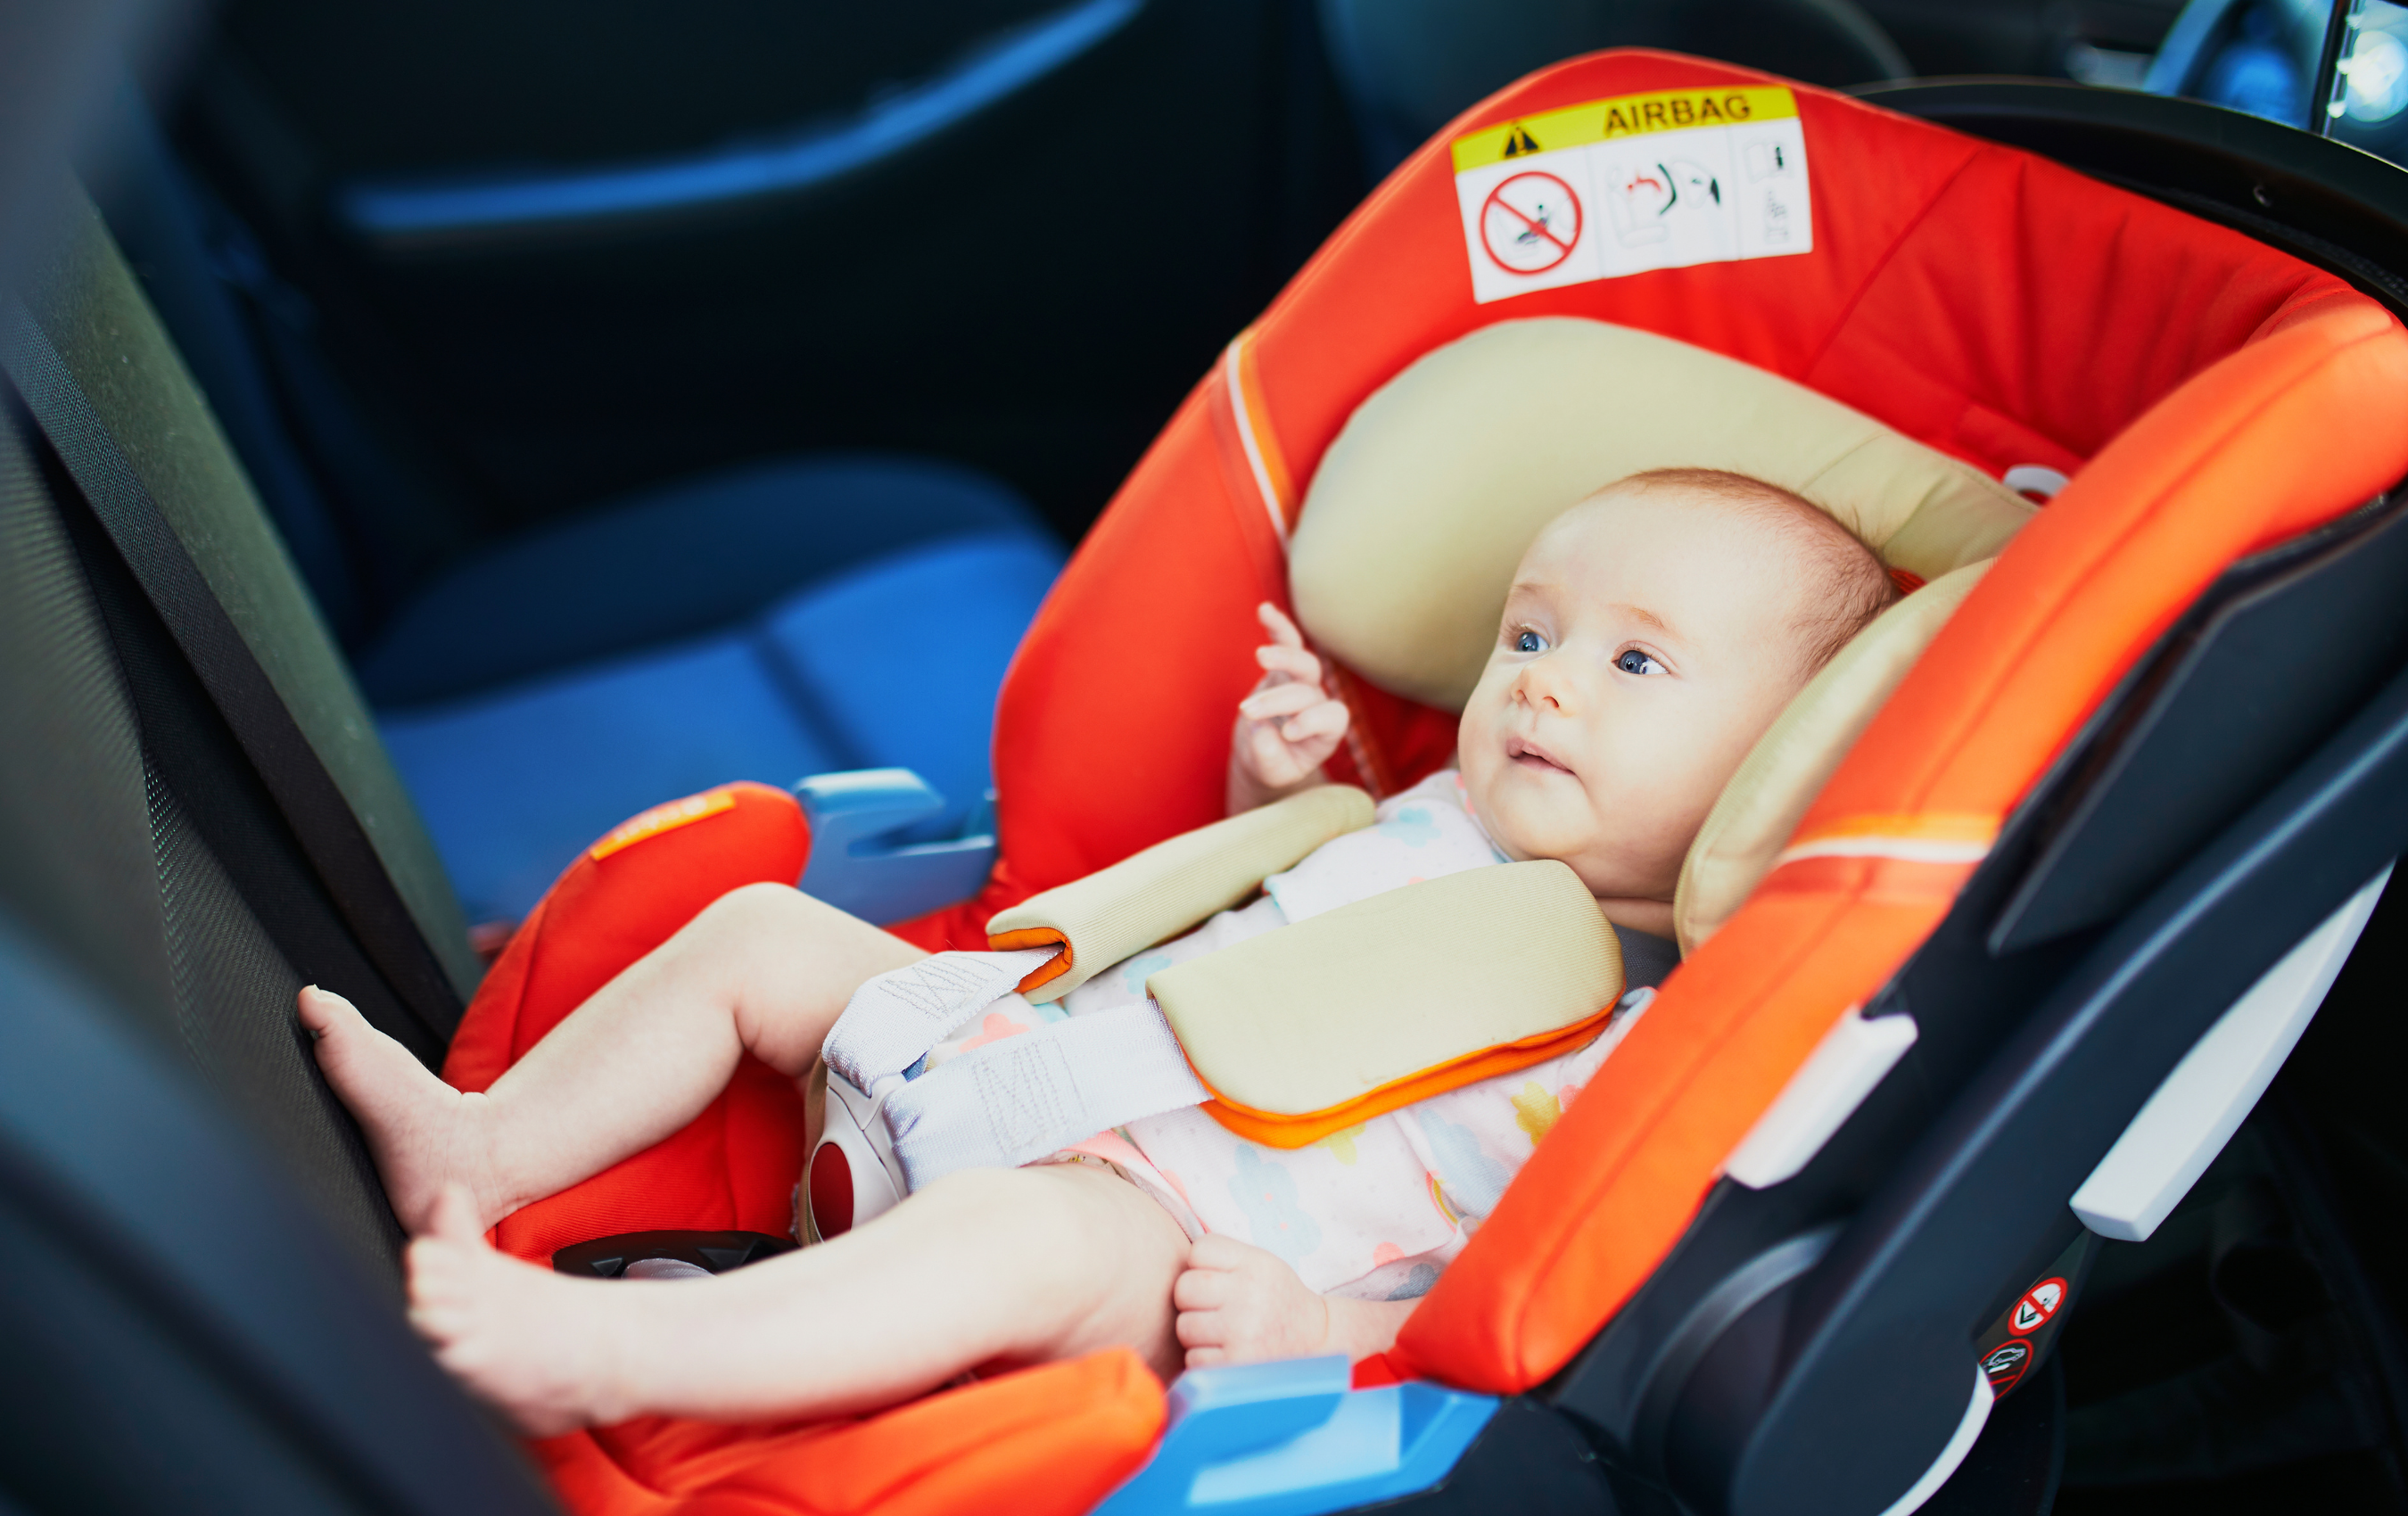 Trajets en voiture avec bébé : quels jouets choisir ?, Autour de bébé